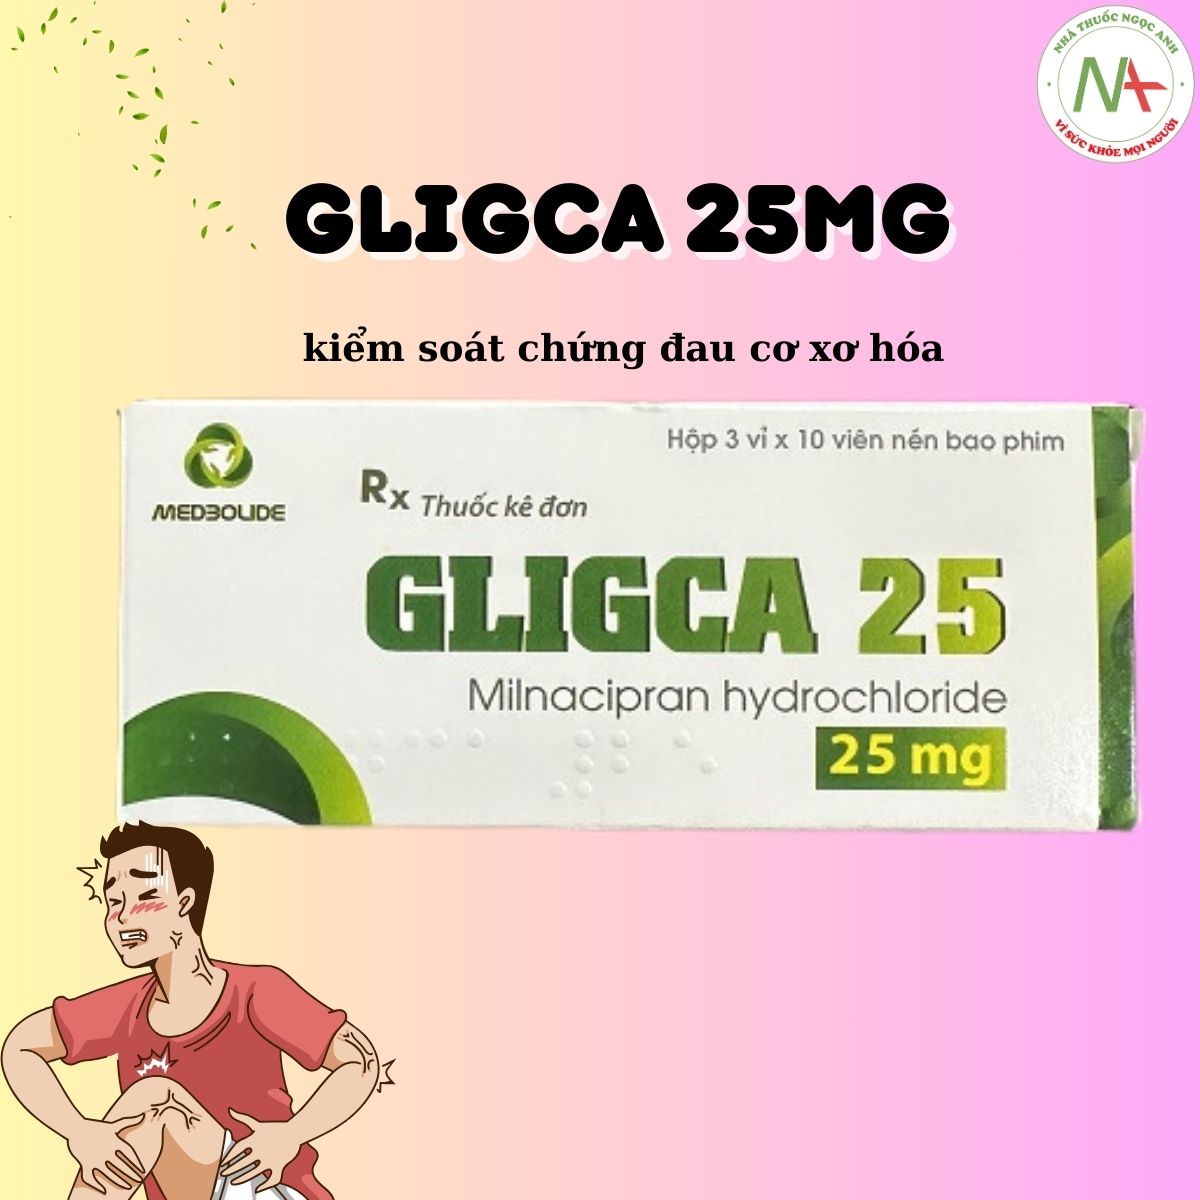 Gligca 25mg có tác dụng kiểm soát chứng đau cơ xơ hóa